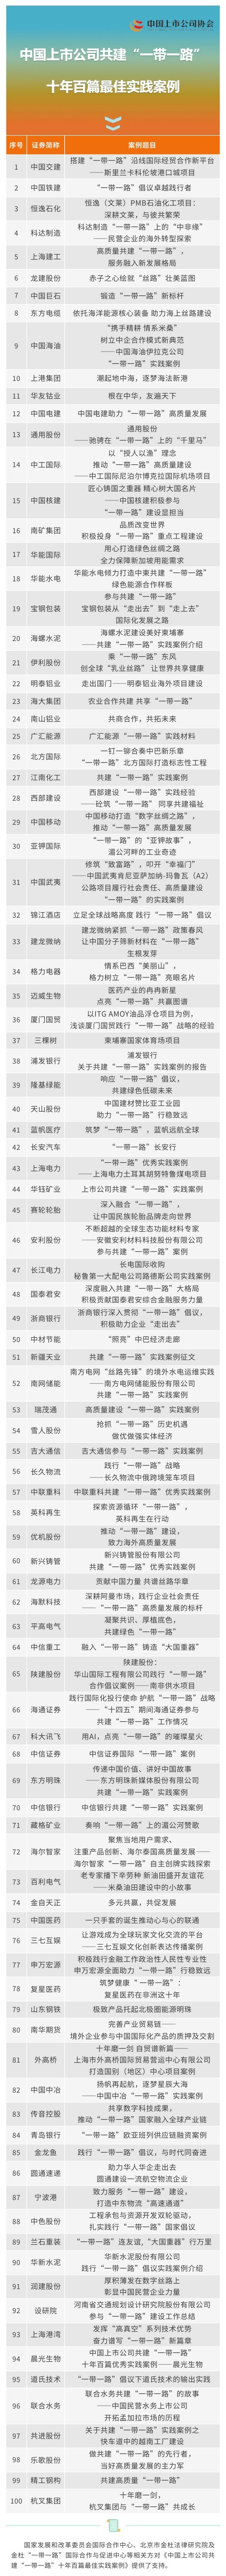 《中国上市公司共建“一带一路”十年百篇最佳实践案例》.jpg